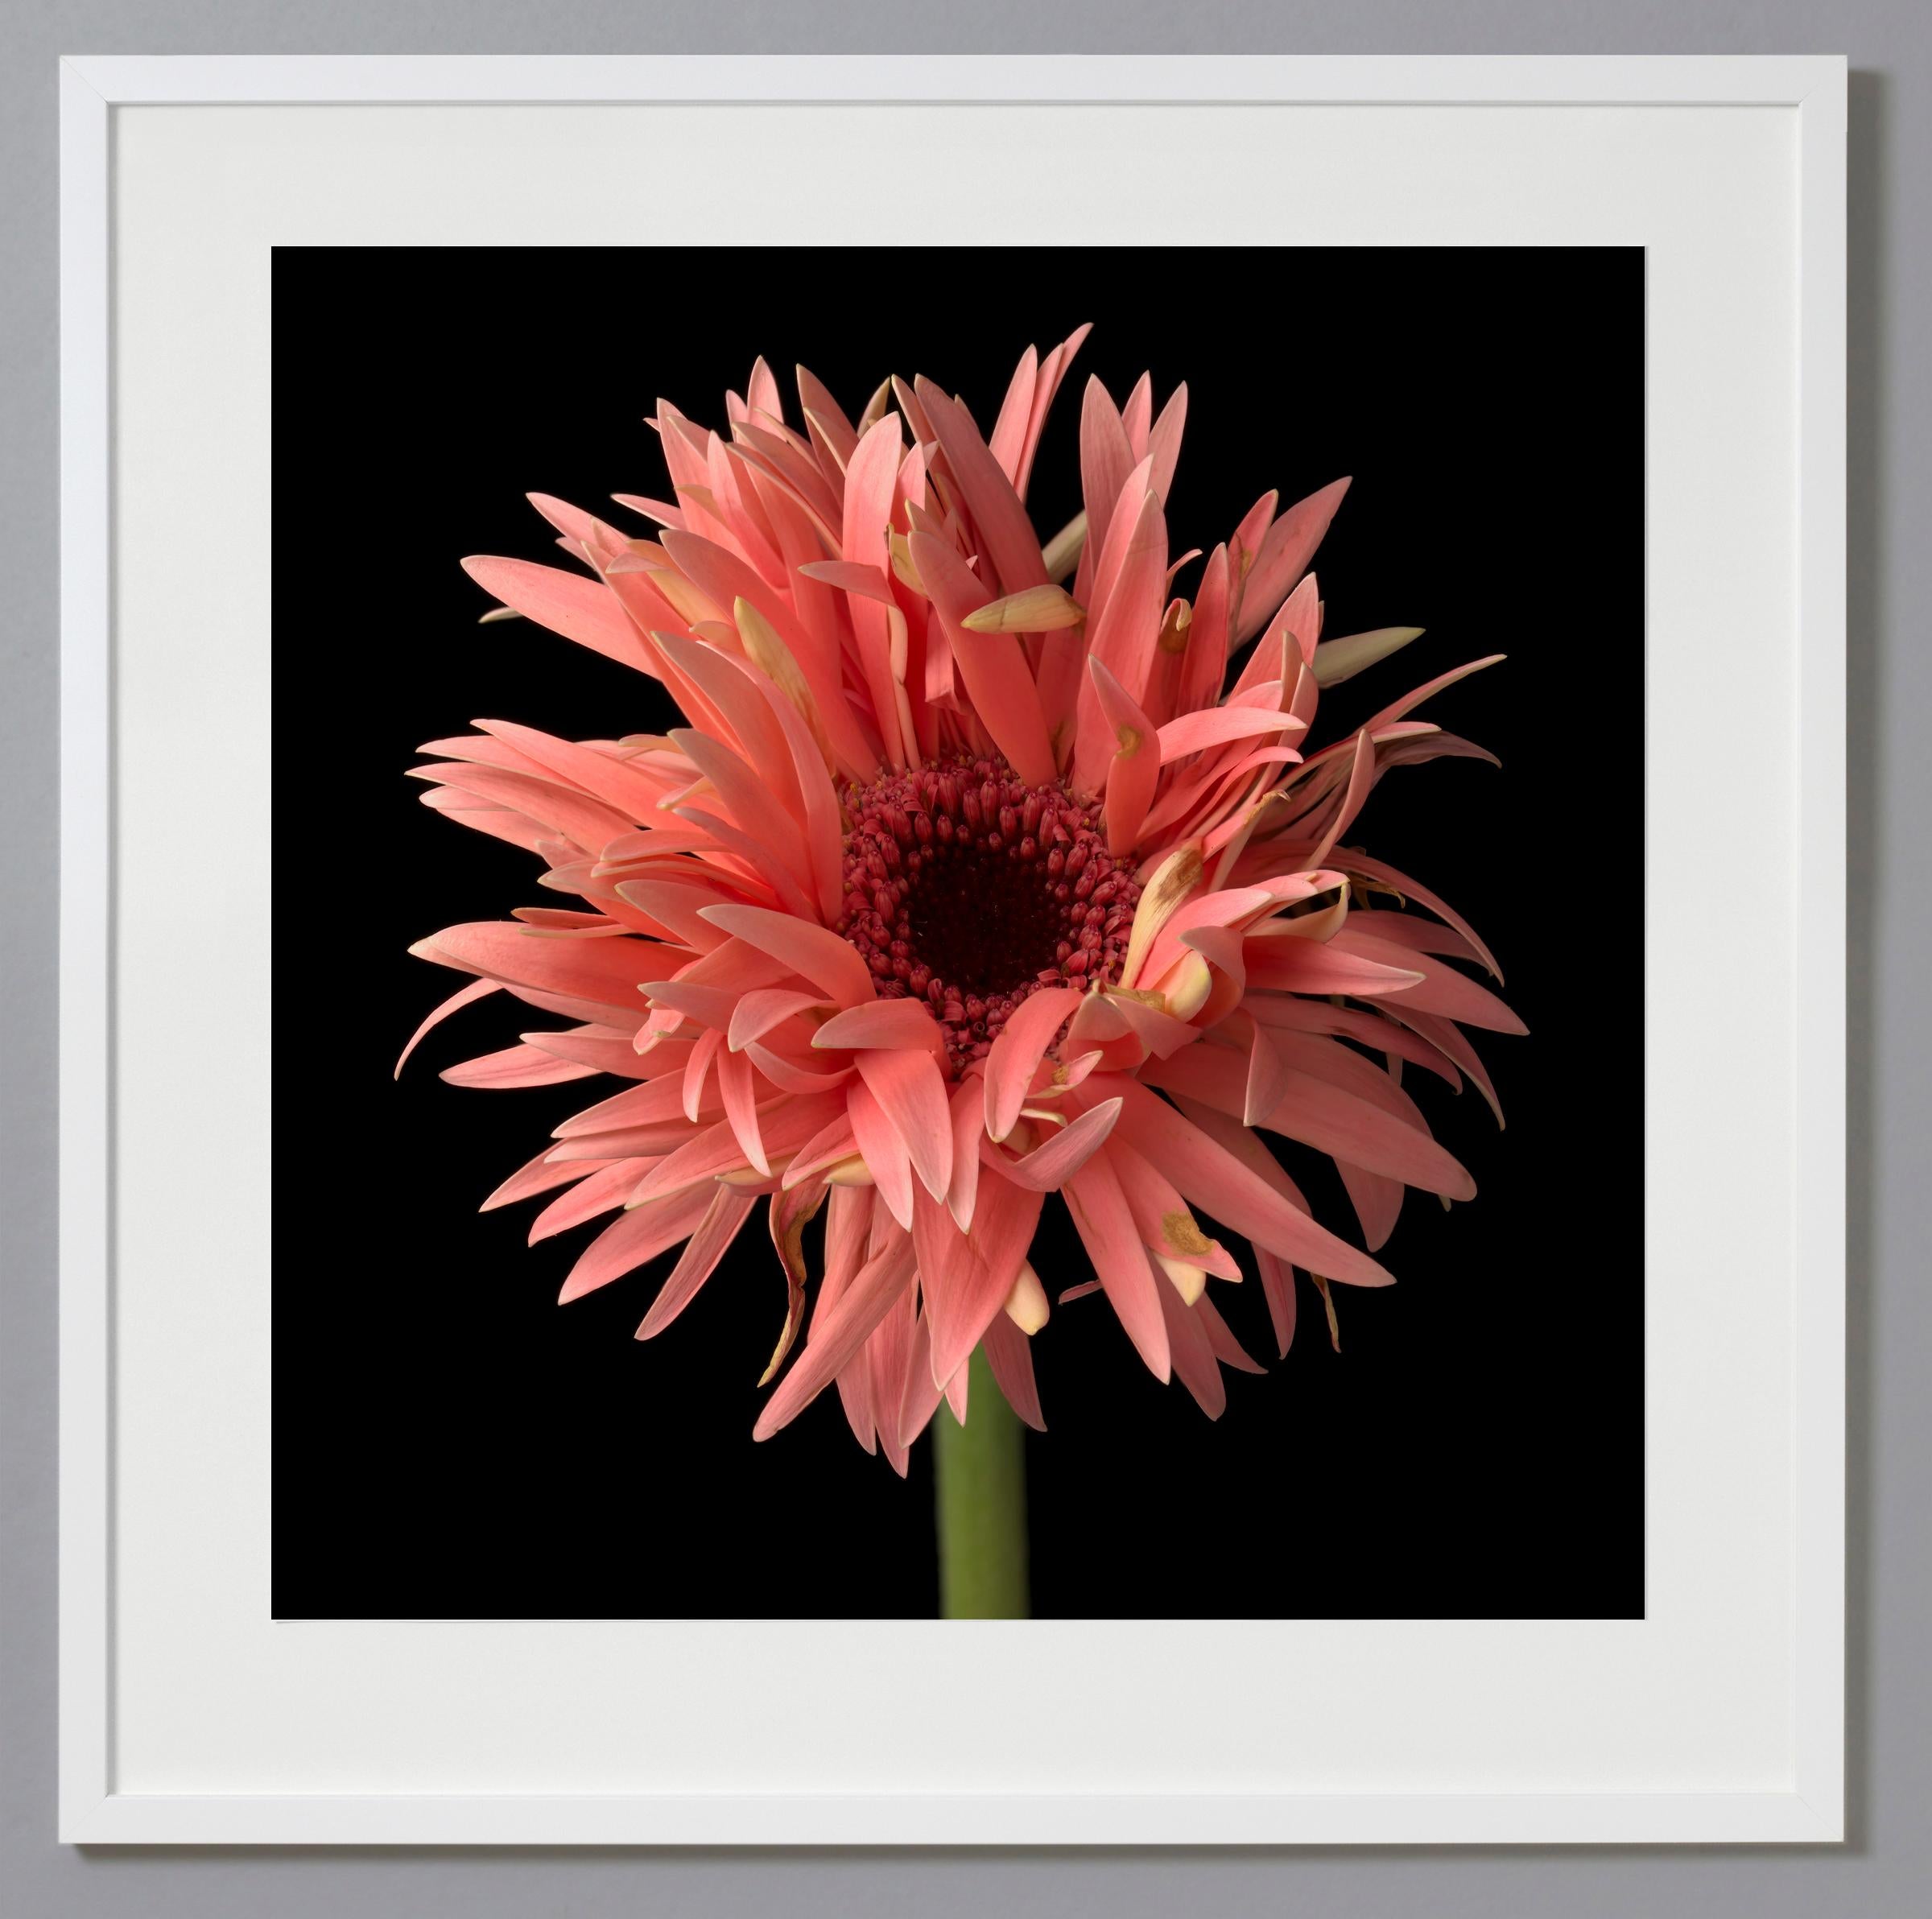 Still-Life Photograph Tim Nighswander - Gerber Daisy 4, photographie couleur, édition limitée, encadrée, botanique, florale